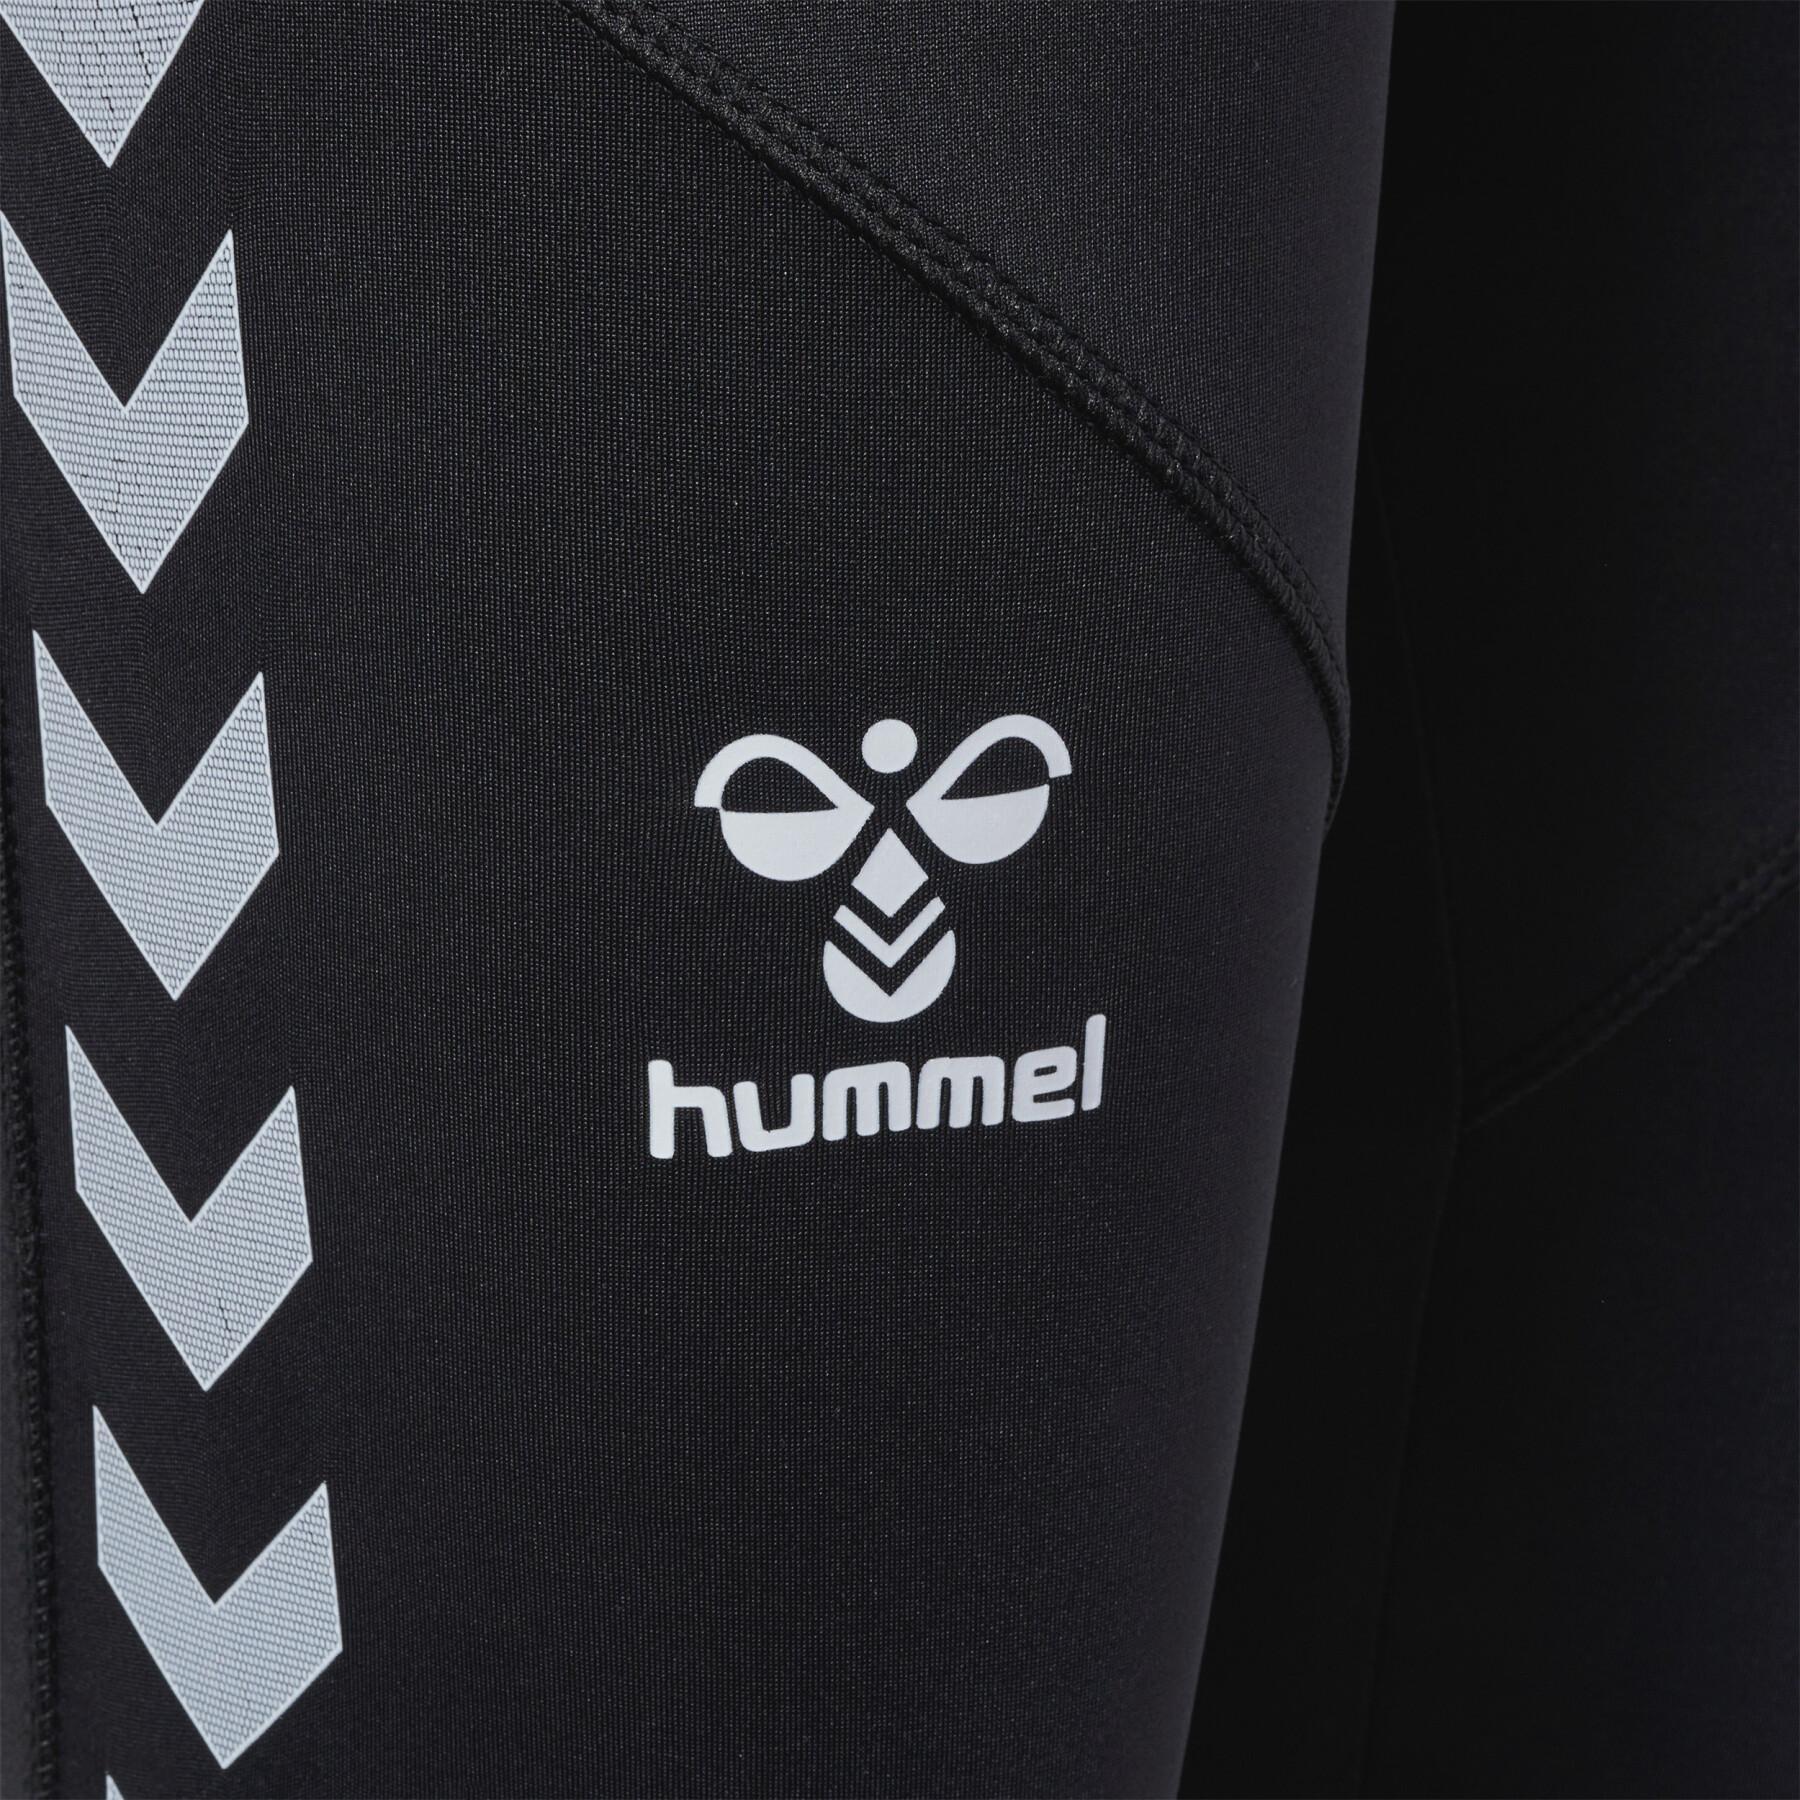 Legging polyester top voor vrouwen Hummel HmlStaltic